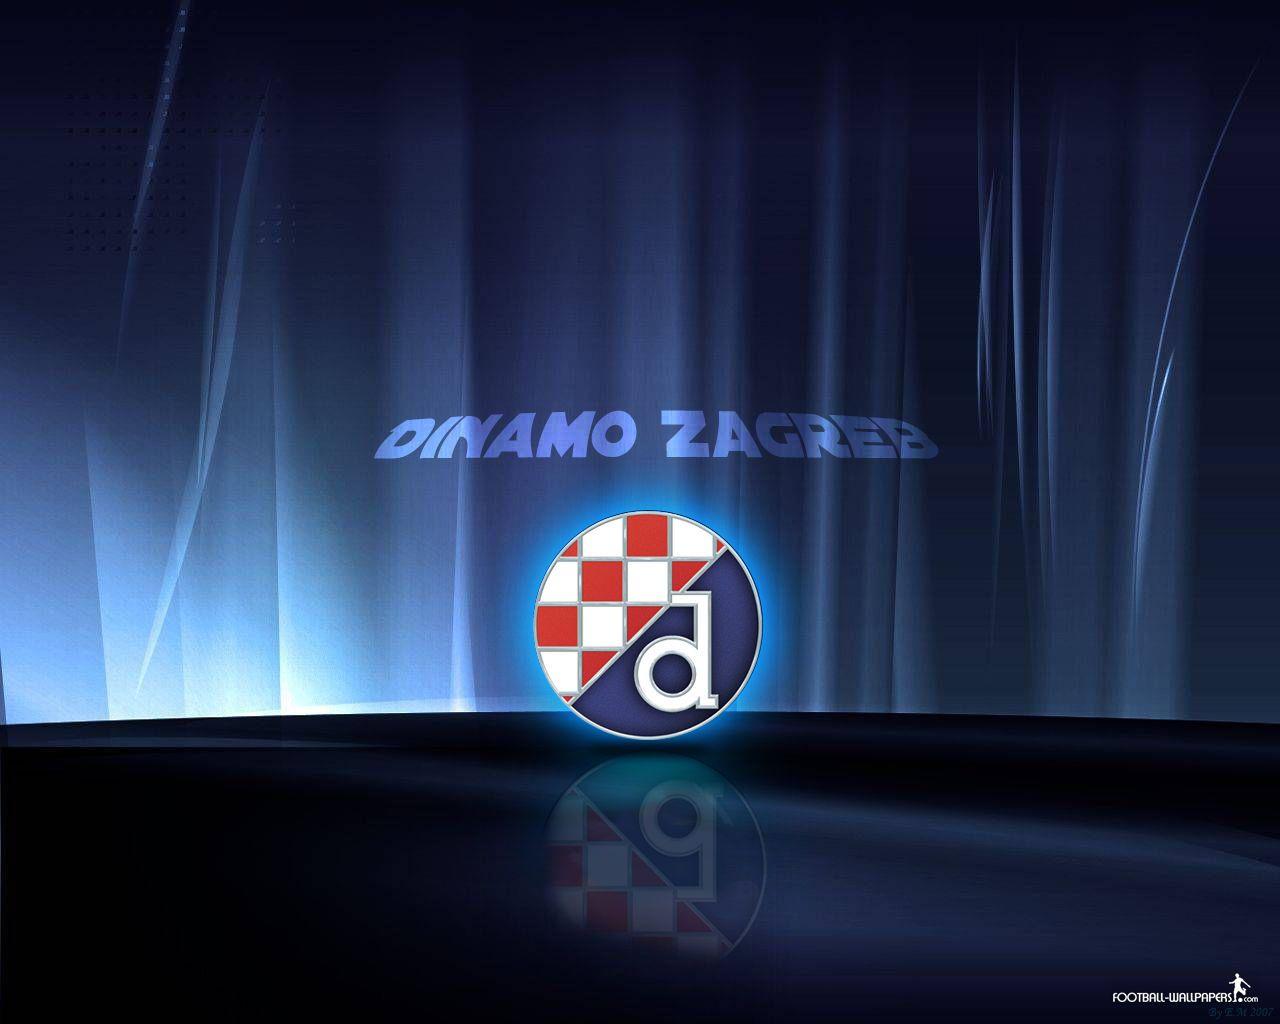 Dinamo Zagreb Wallpaper: Players, Teams, Leagues Wallpaper